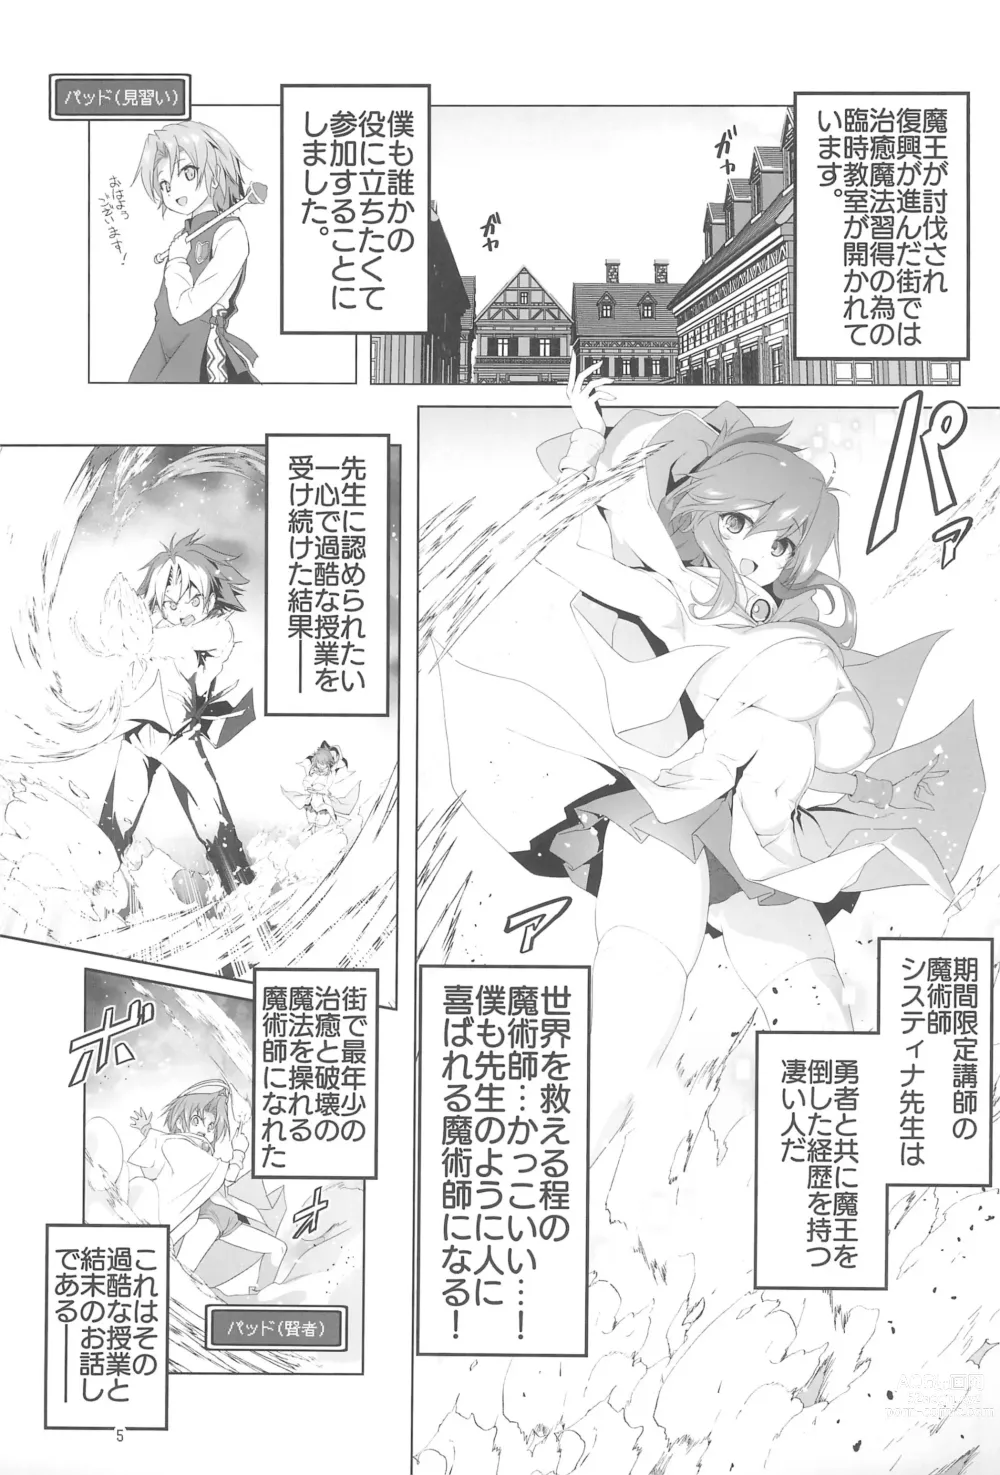 Page 5 of doujinshi Makotoni Zannen desu ga Bouken no Sho 9 wa Kiete Shimaimashita.